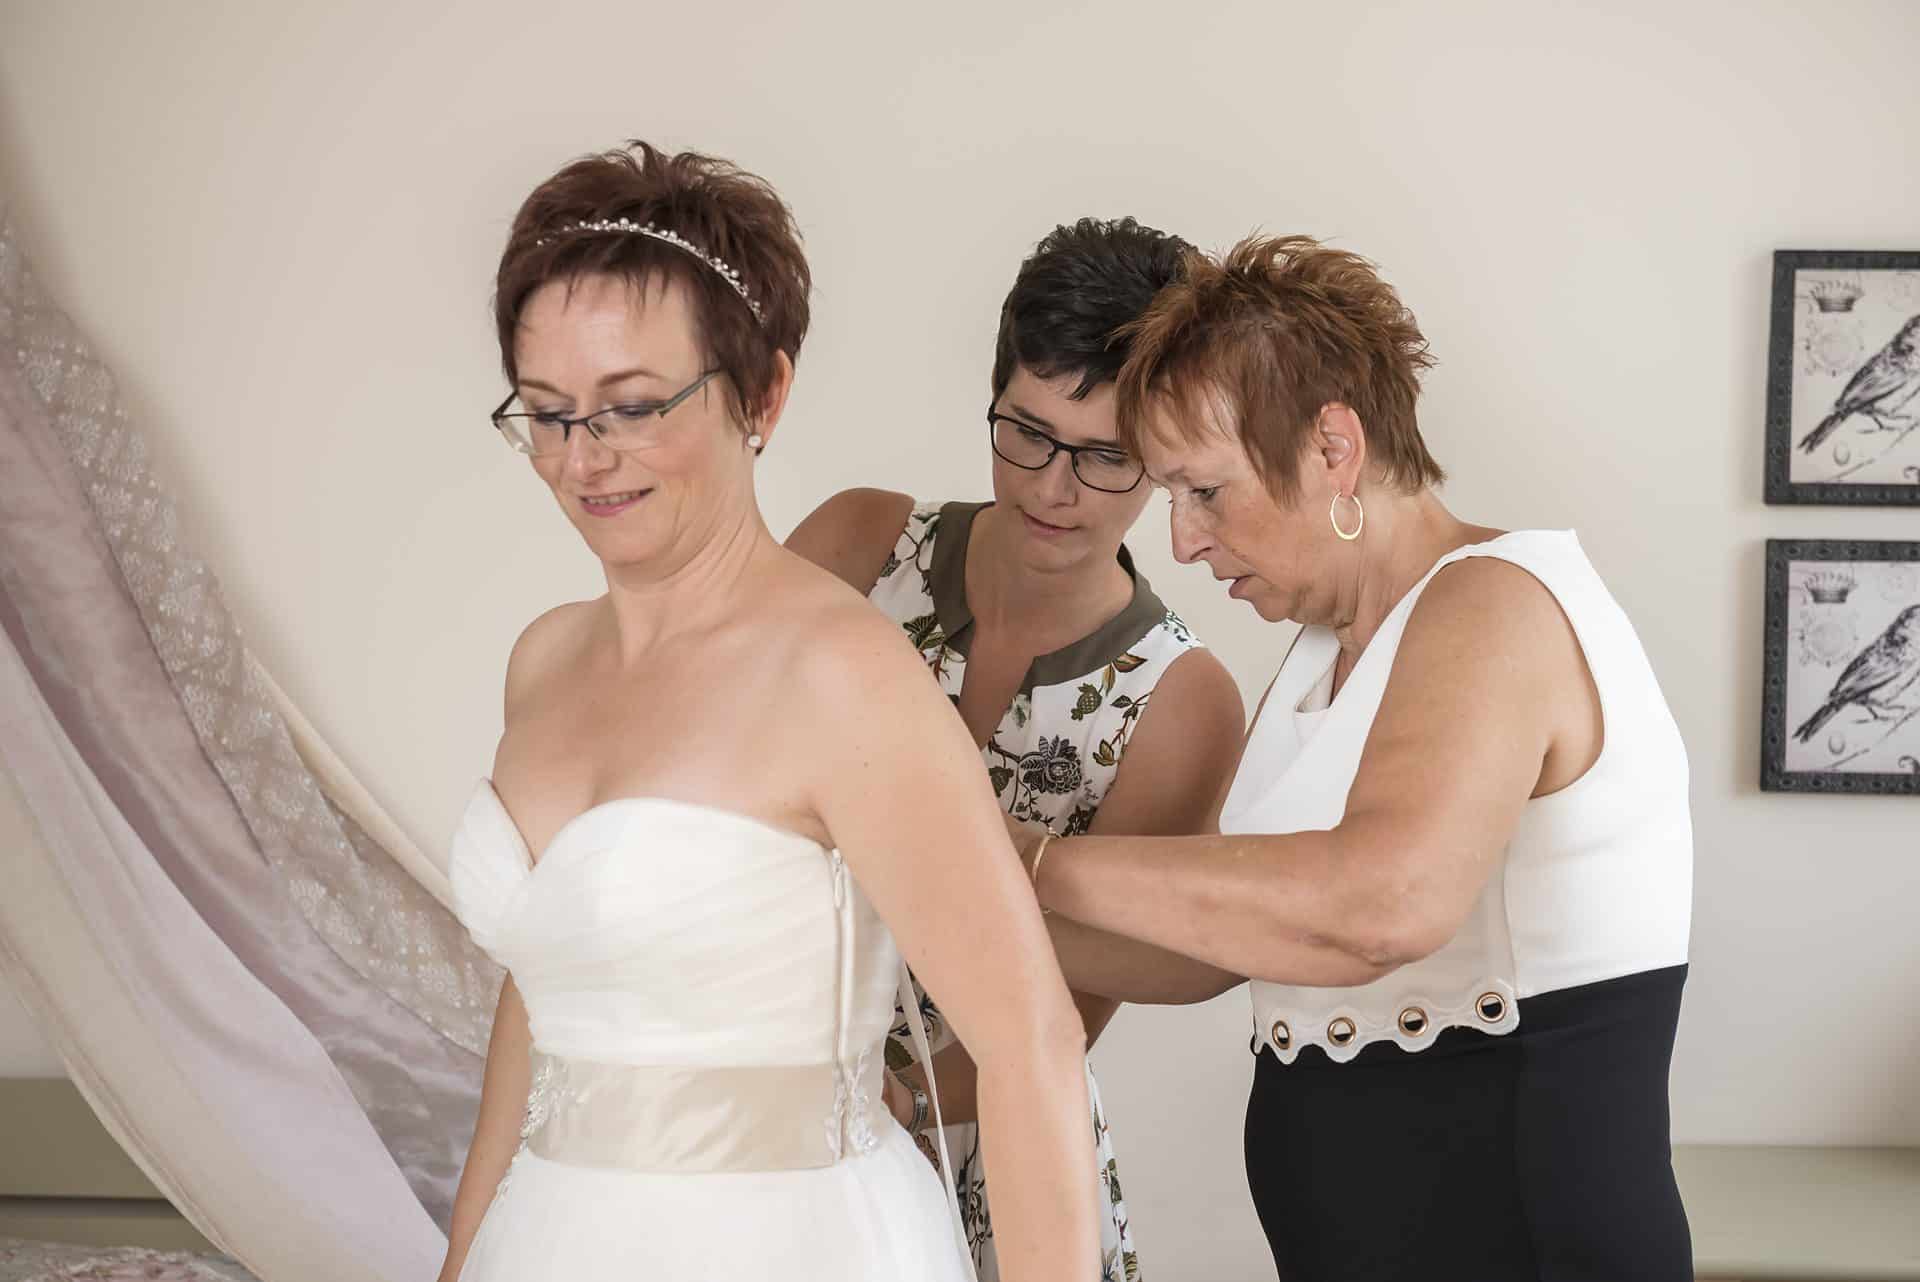 Eine Frau hilft einer anderen Frau beim Anziehen eines Hochzeitskleides.